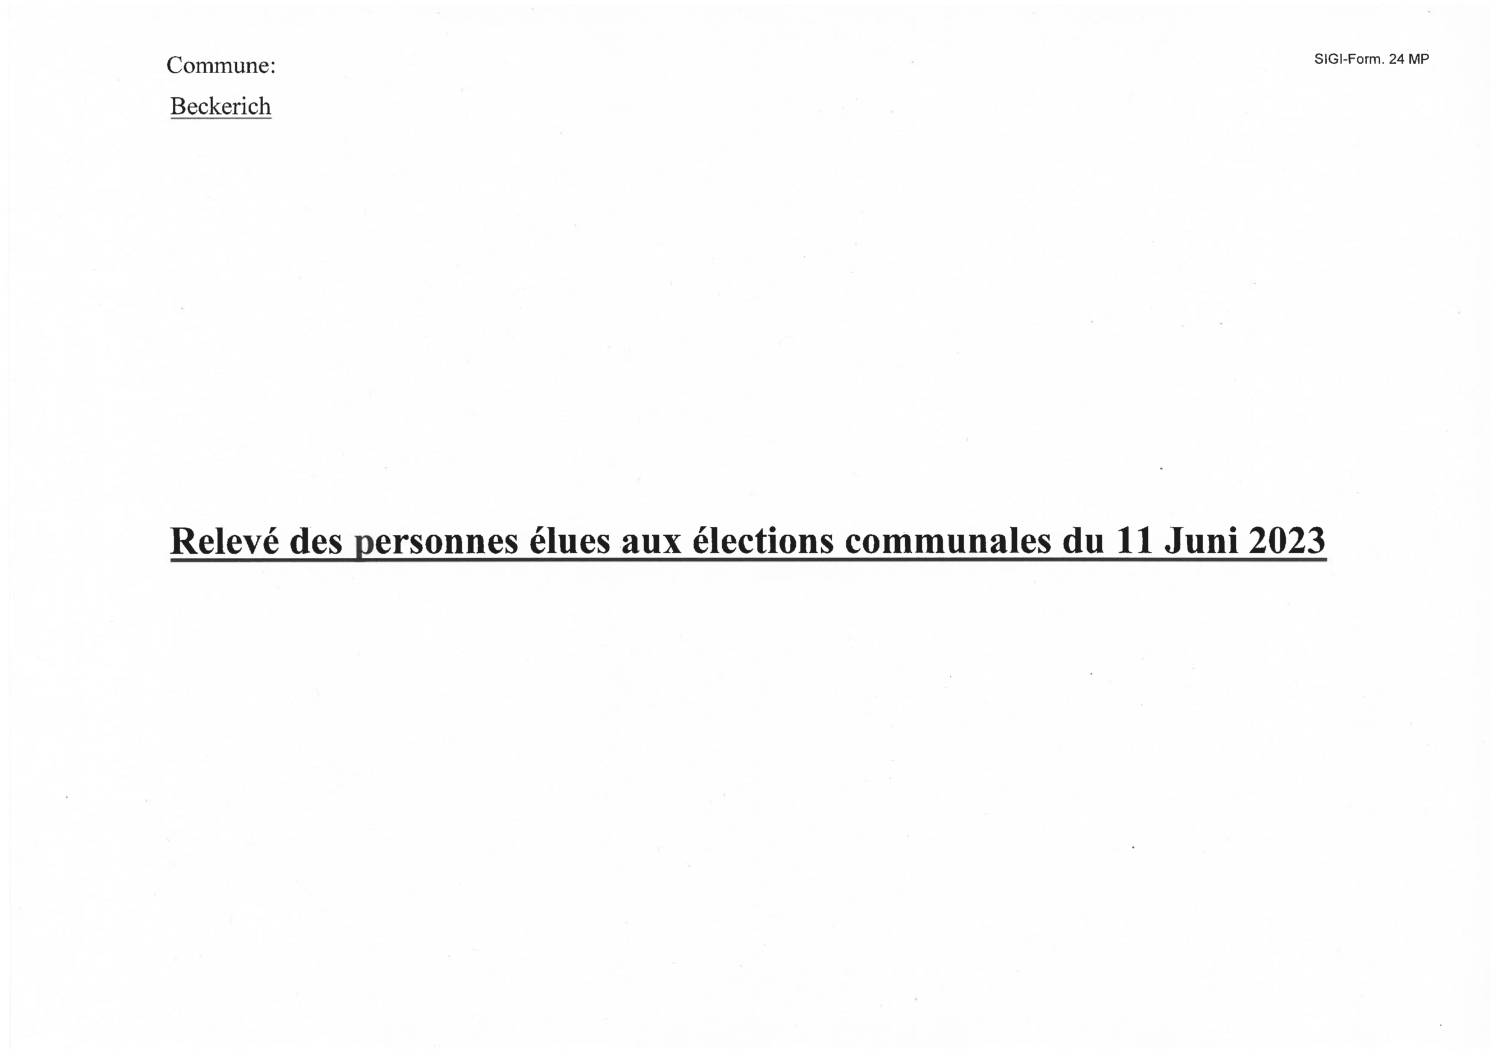 Relevé des personnes élues aux élections communales du 11 juin 2023